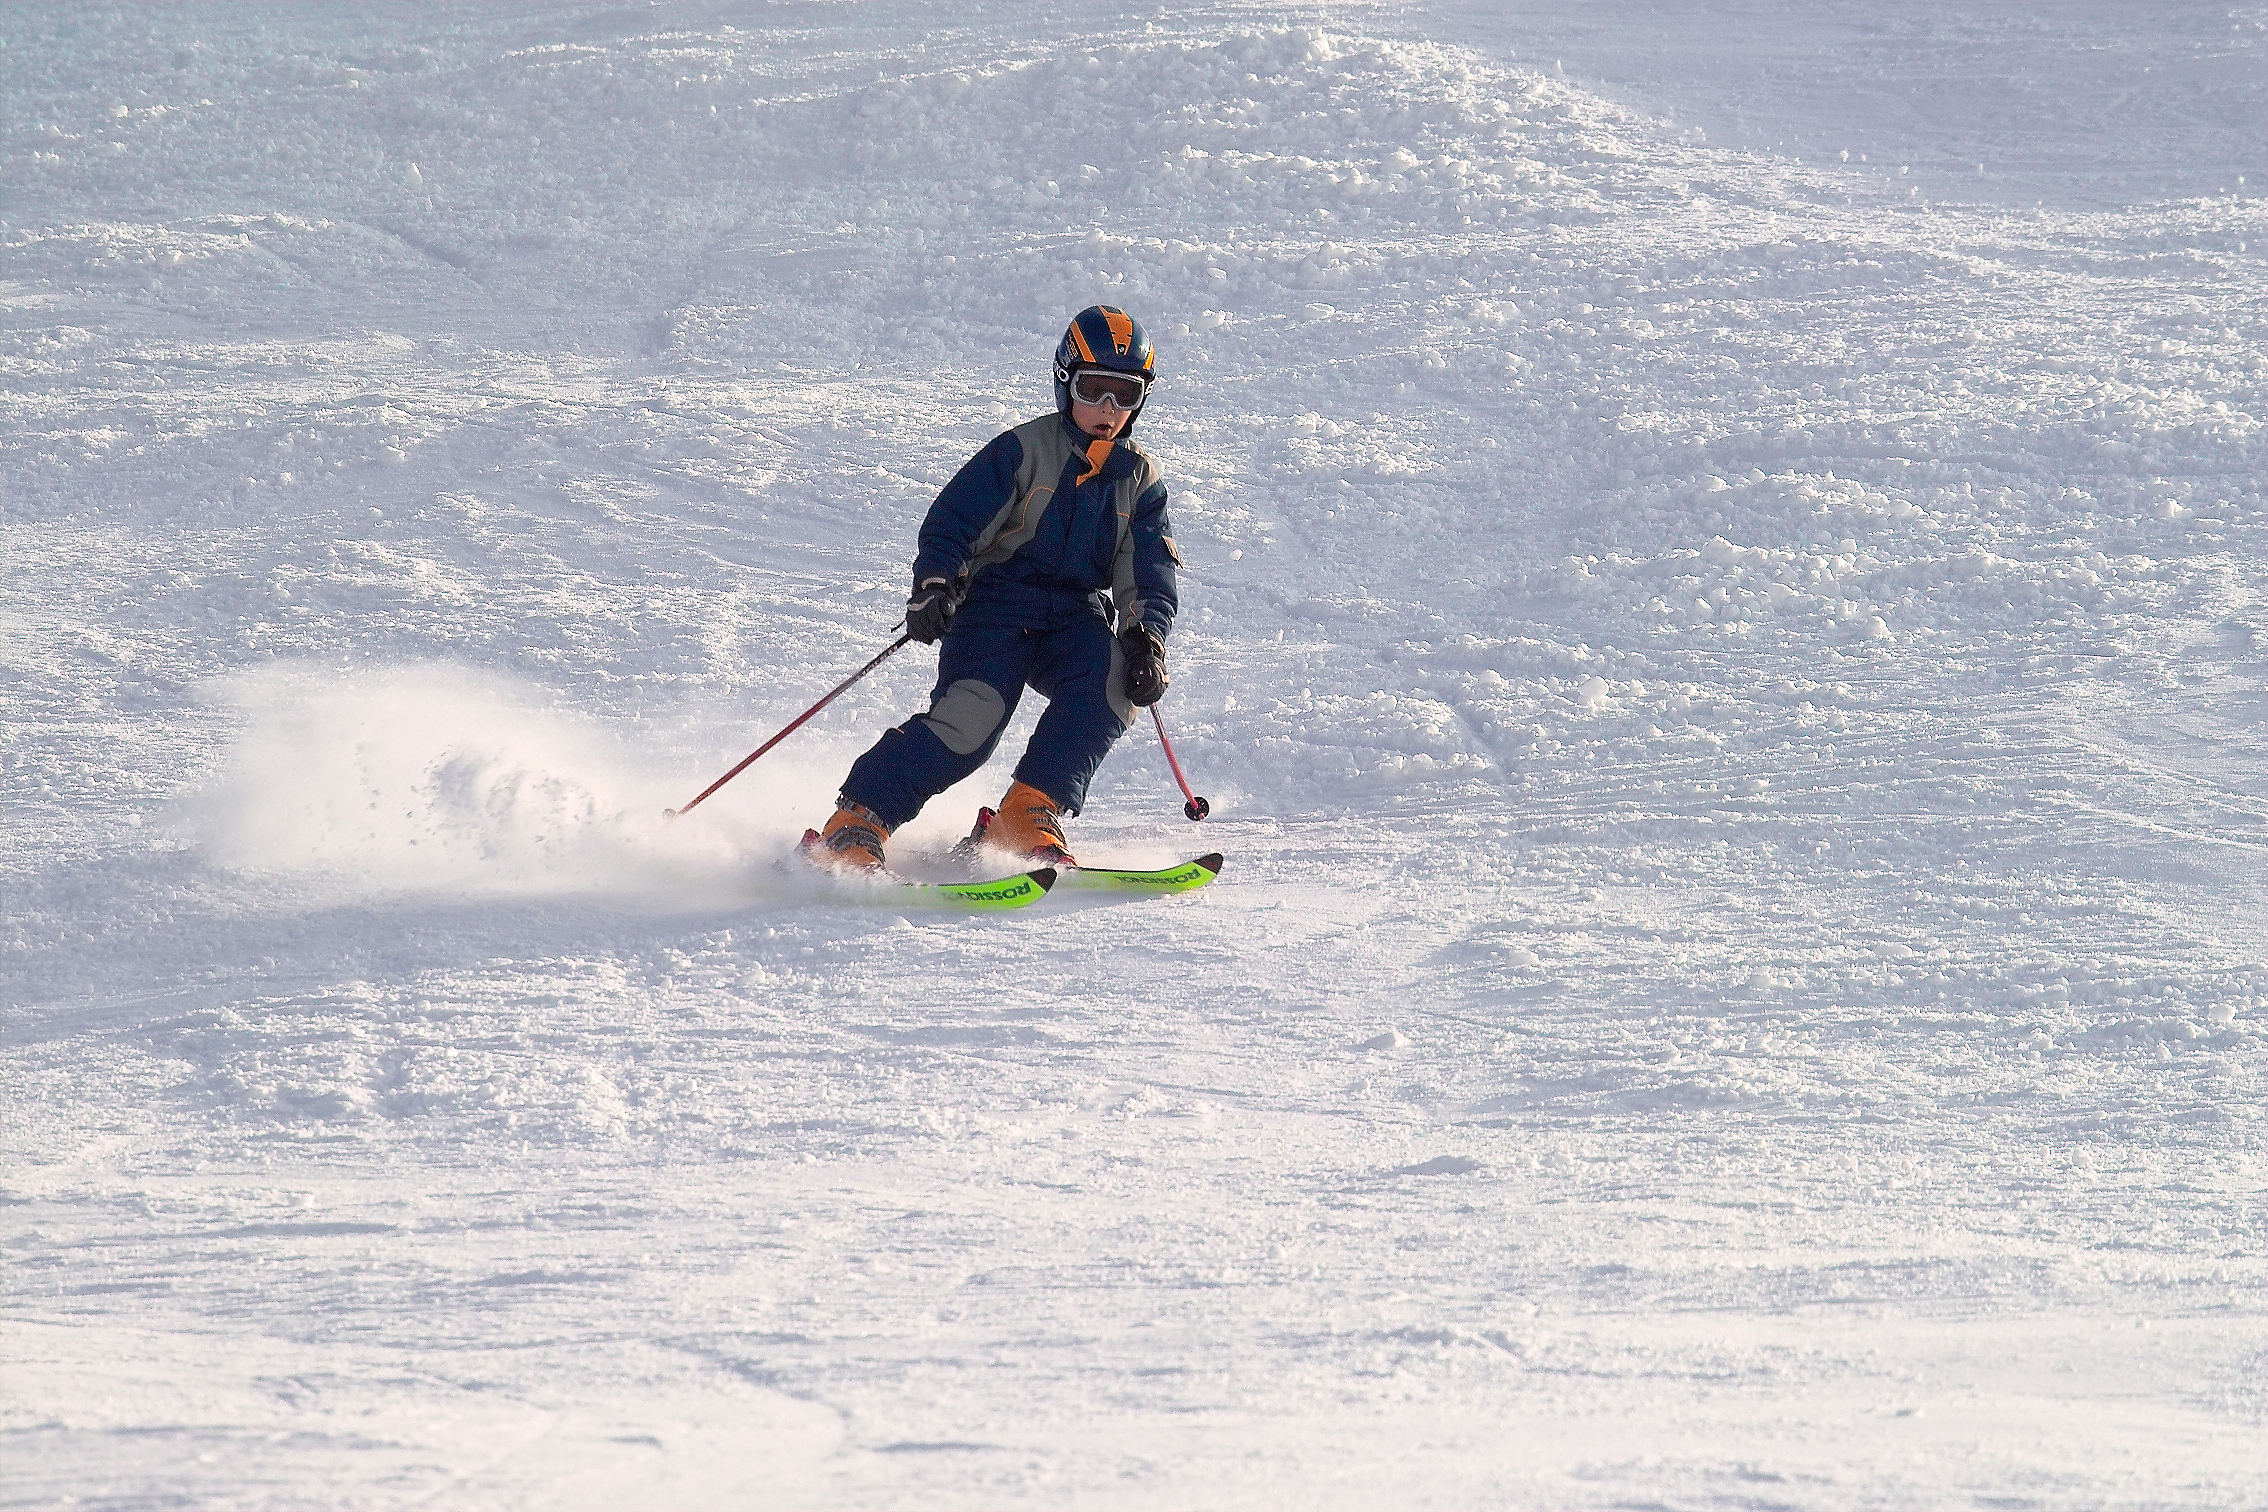 Laurent skiing